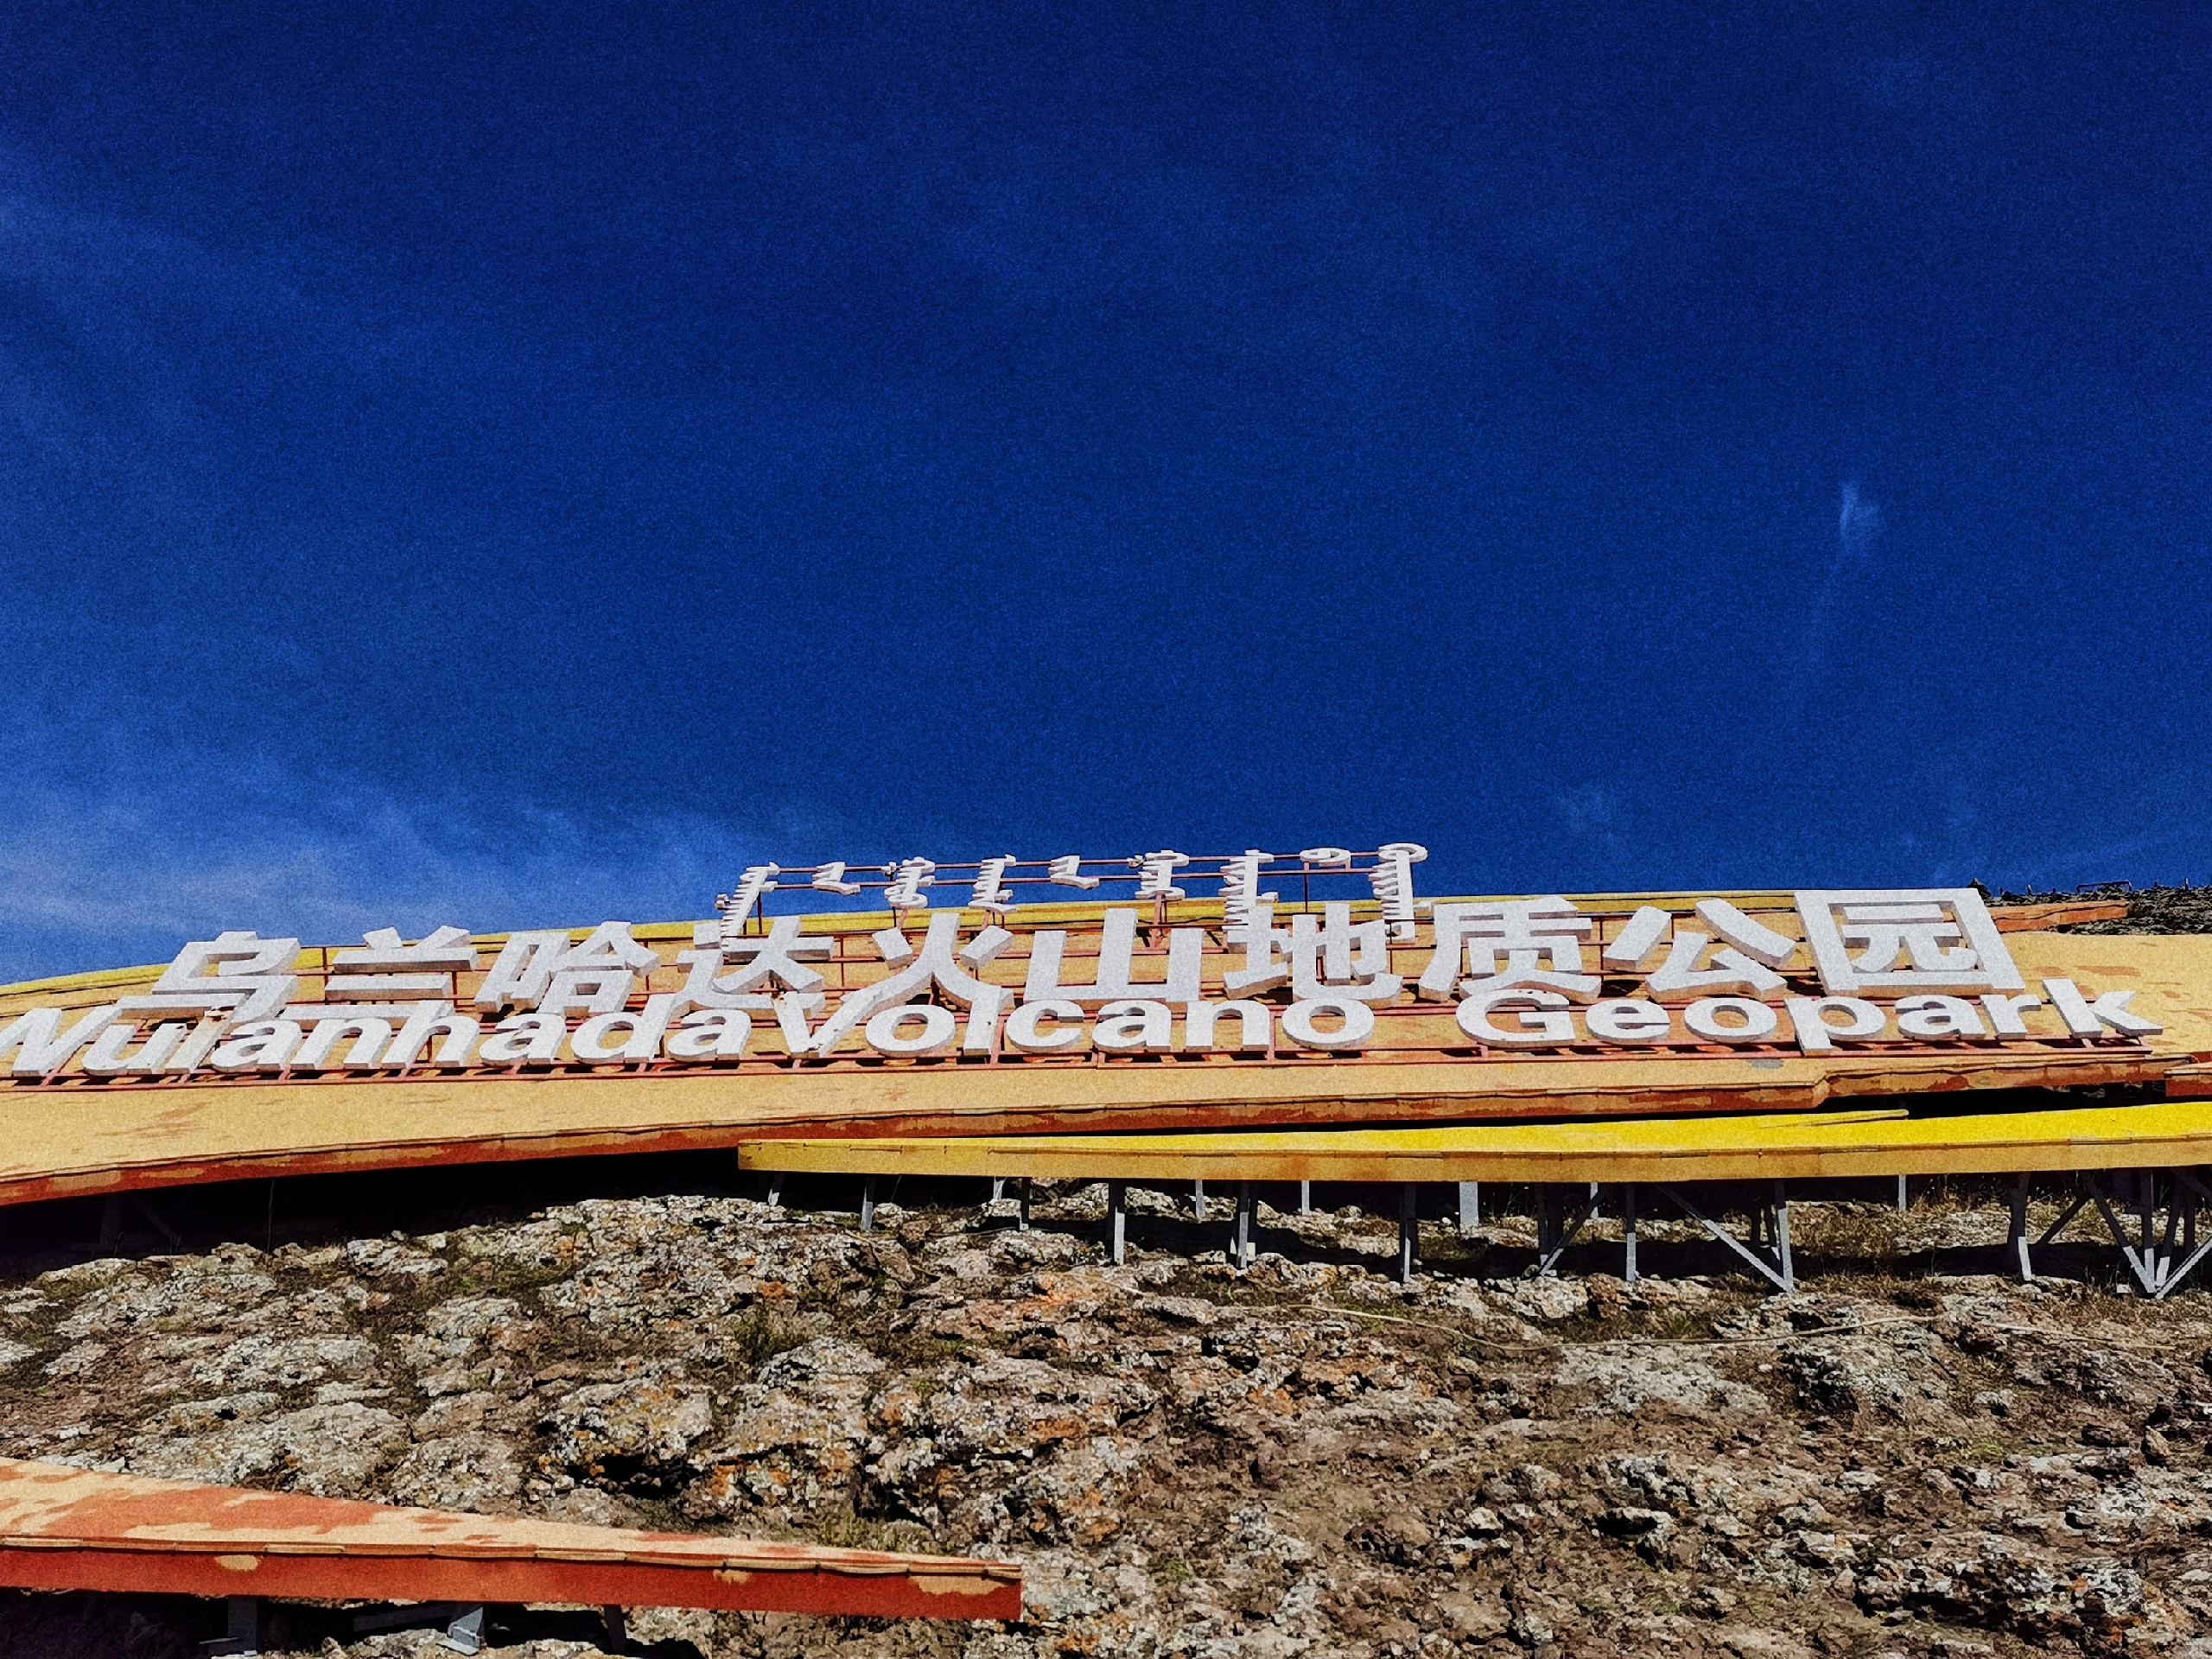 连云港自驾内蒙古自治区乌兰察布市-察哈尔右翼后旗火山遗址